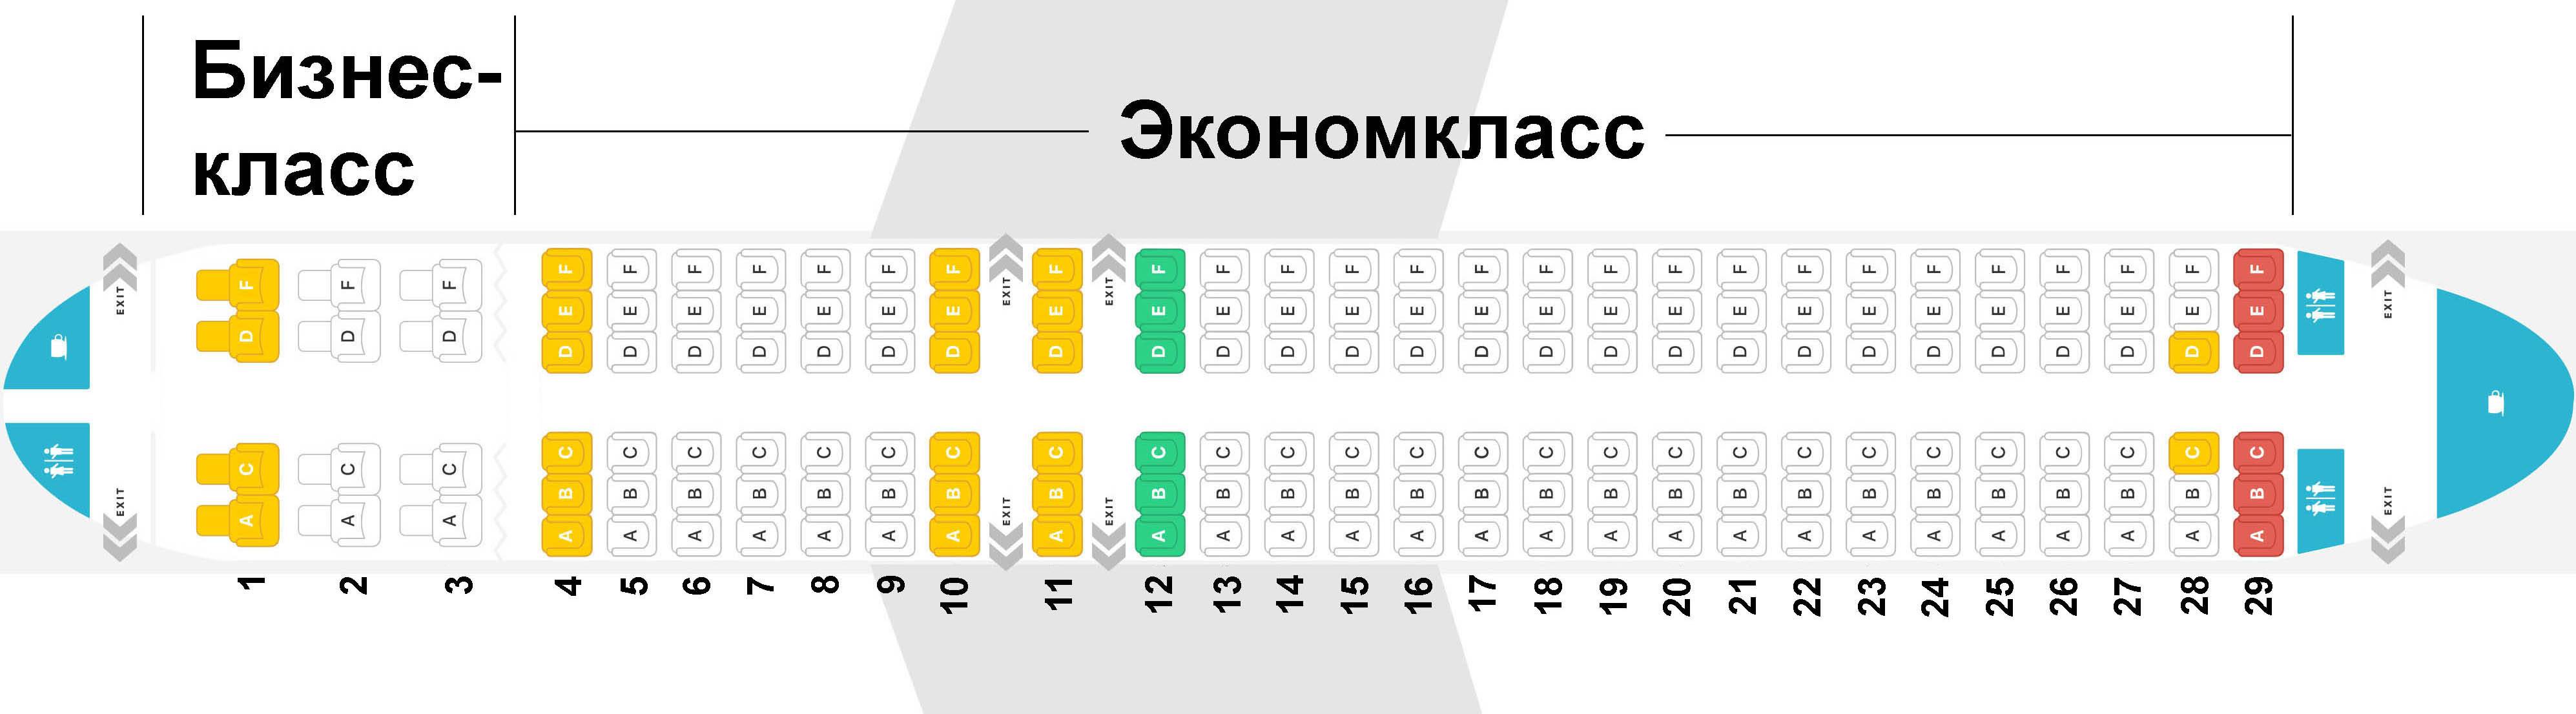 Схема салона и выбор места в авиакомпании «победа» | авианити